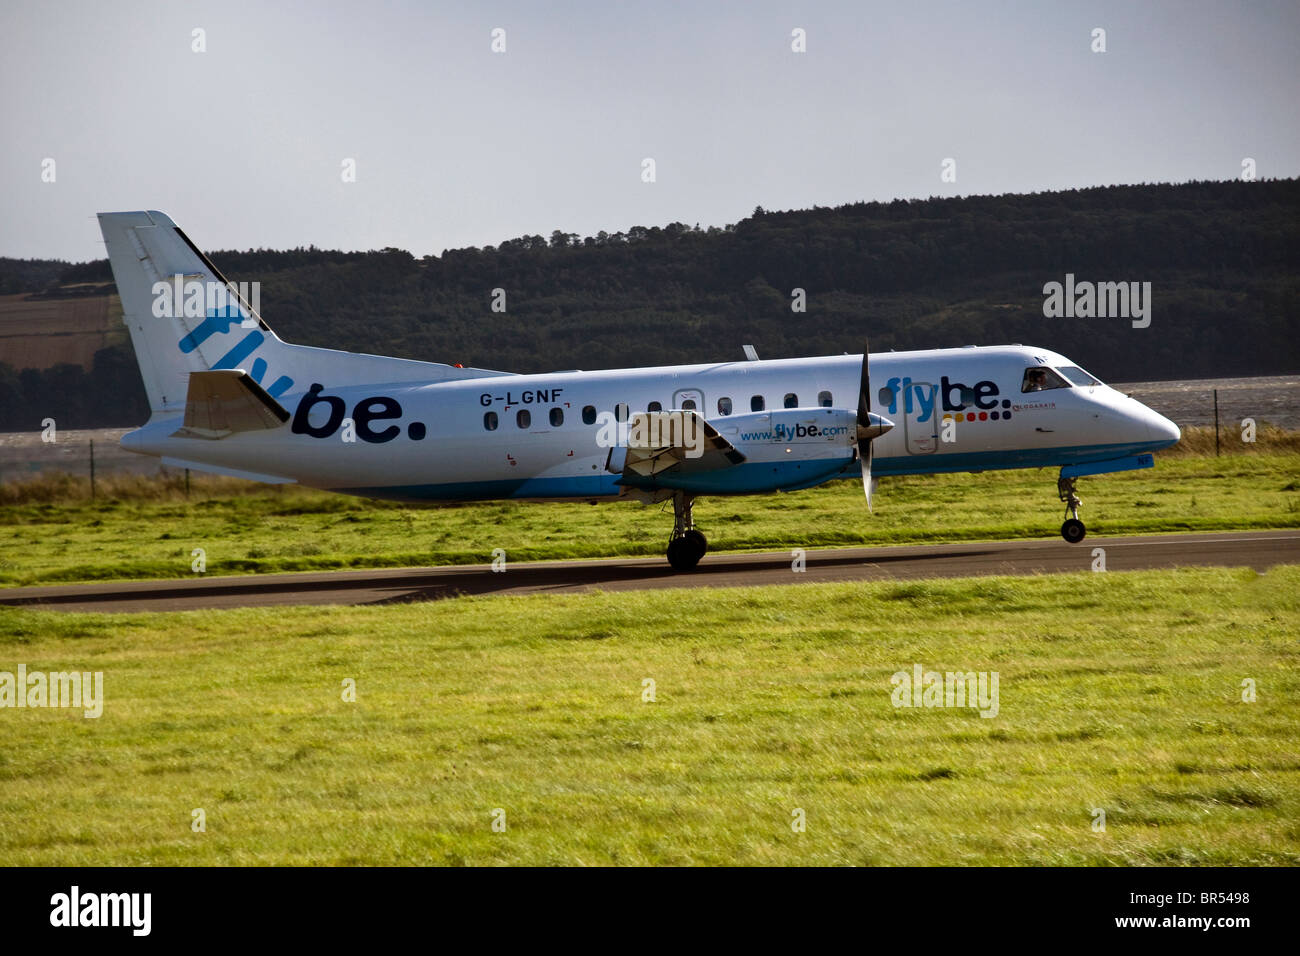 SAAB 340 Flybe avion turbopropulseur accélère le long de la piste au décollage à l'aéroport de Dundee, Royaume-Uni Banque D'Images